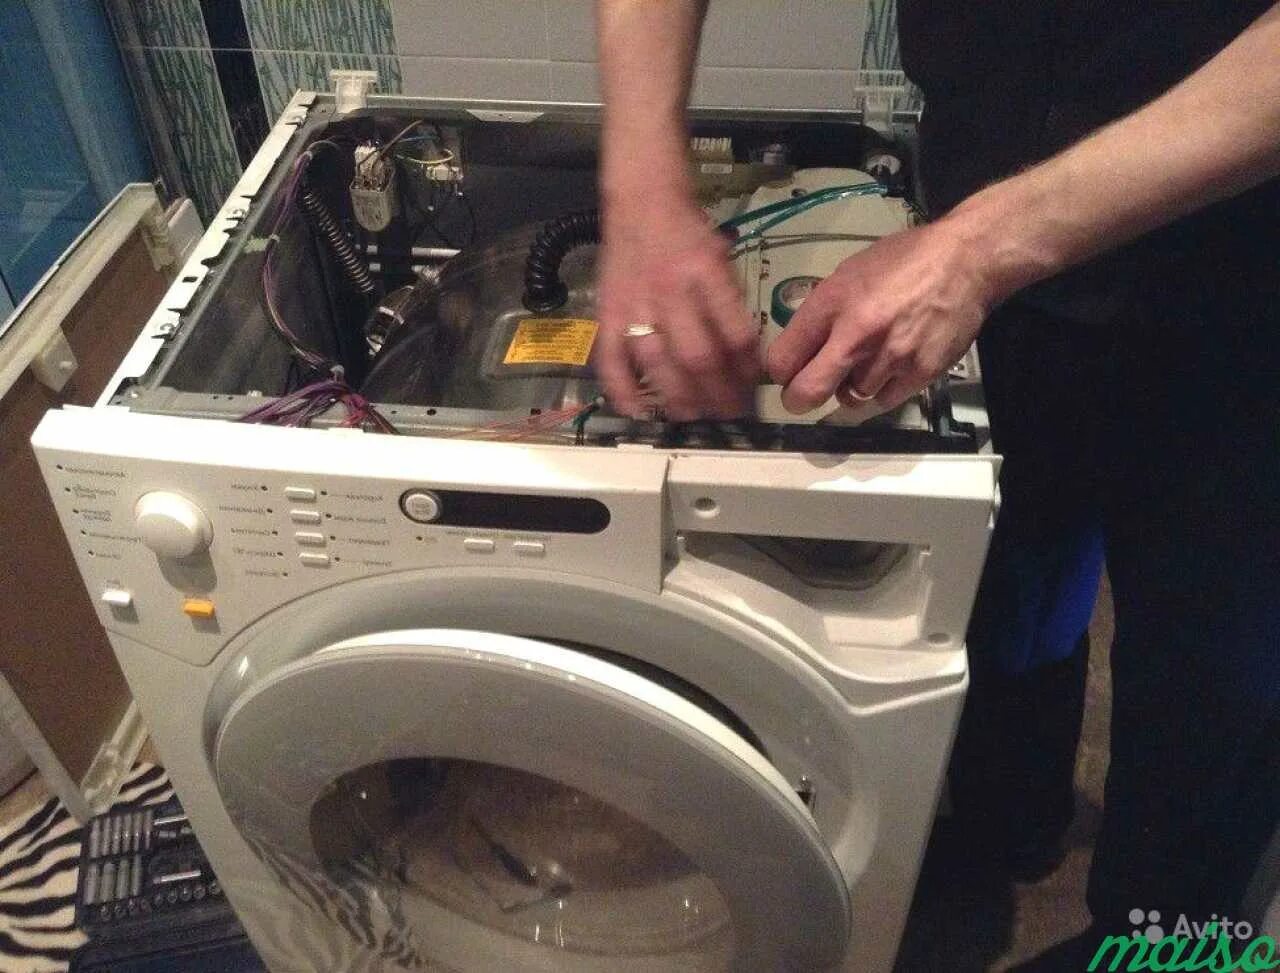 Ремонт стиральных машин. Мастер по ремонту стиральных машинок. Мастер по стиральным машинам. Сломалась стиральная машина. Ремонт стиральных машин ивантеевка